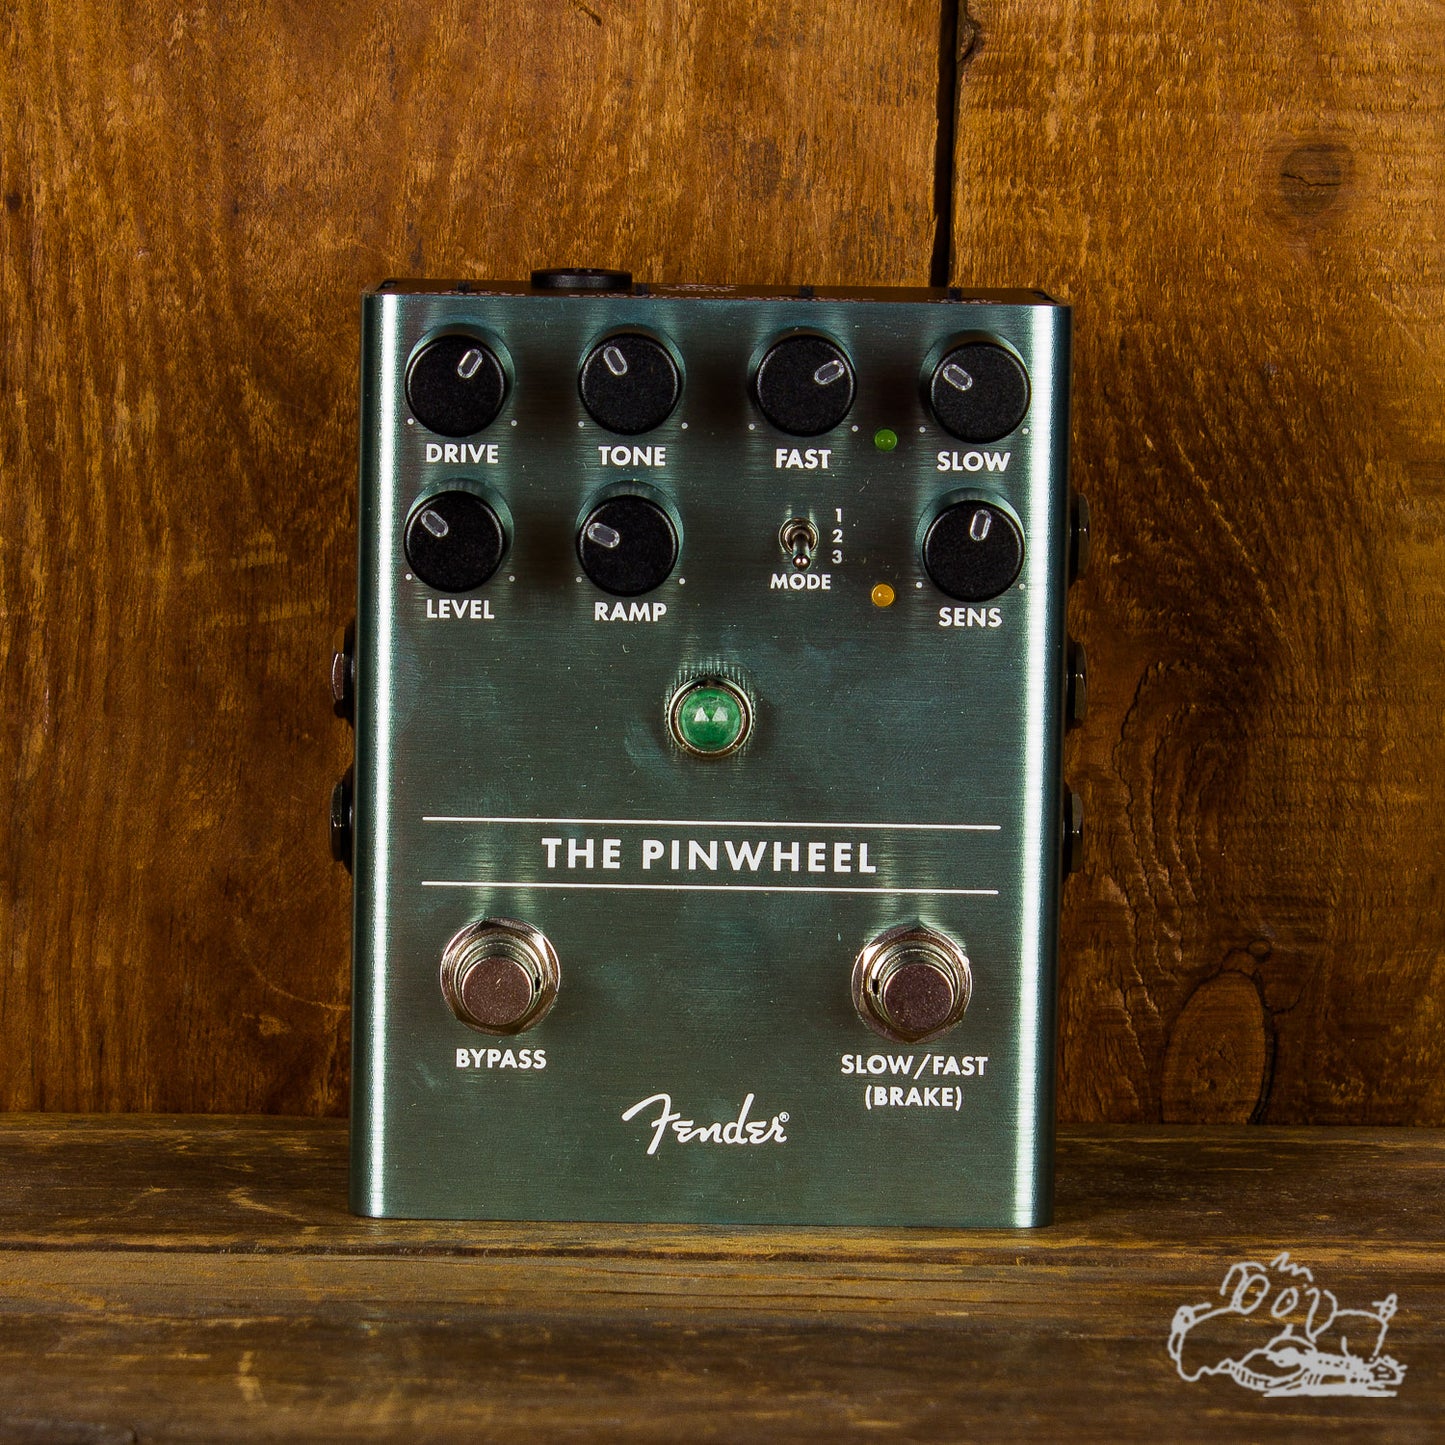 Fender "The Pinwheel" Rotary Speaker Emulator Pedal